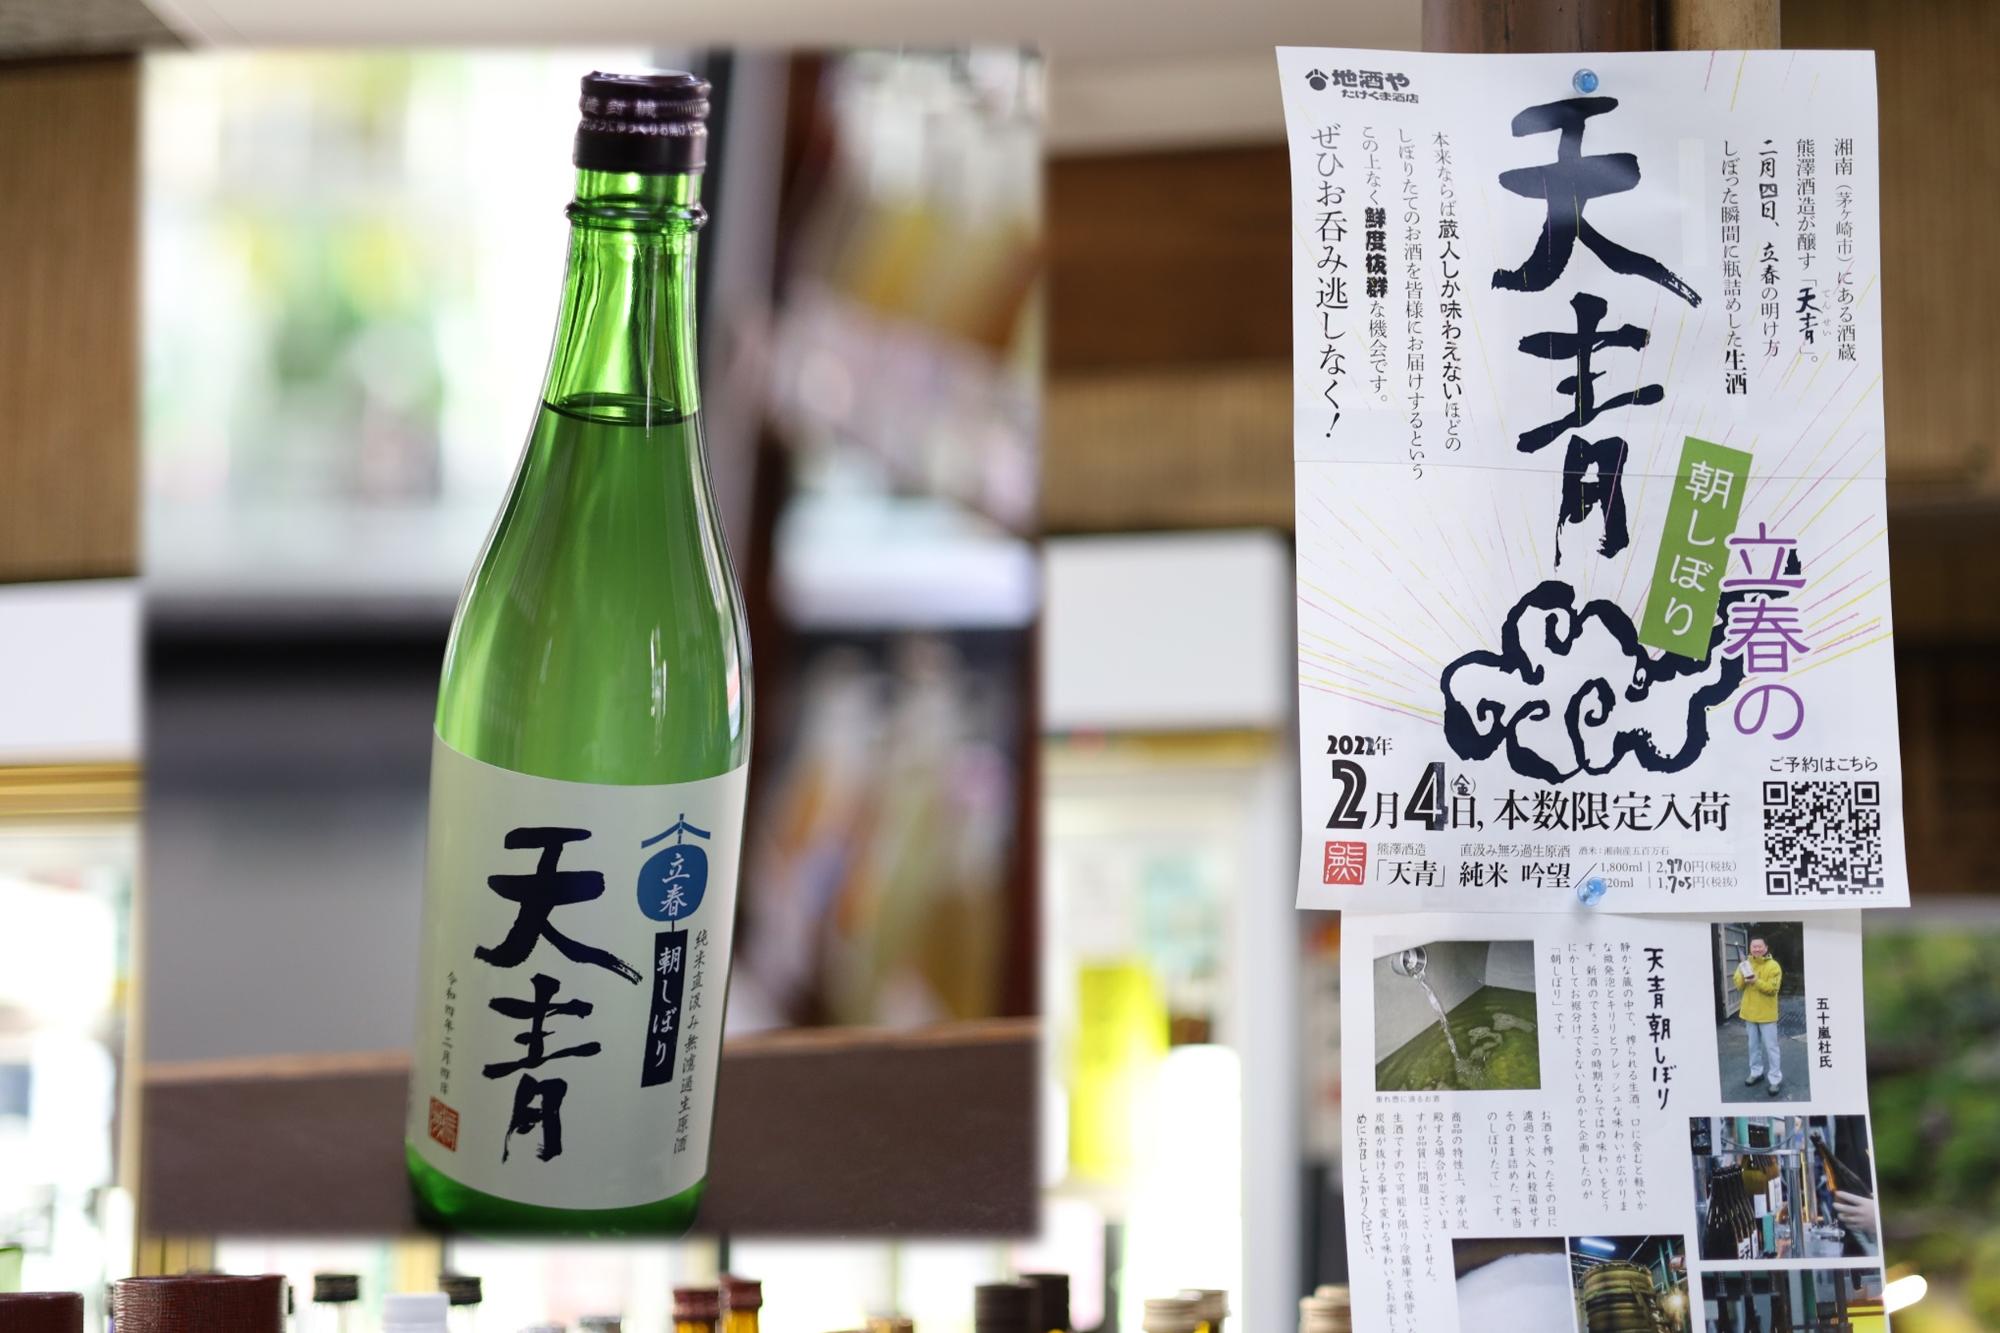 熊澤酒造が醸す「天青」。2月のイベントでは神奈川の地元のお米「湘南地区産 五百万石」を使用した「天青 朝しぼり」の販売。次回の「朝しぼり」イベントは3月に開催予定。